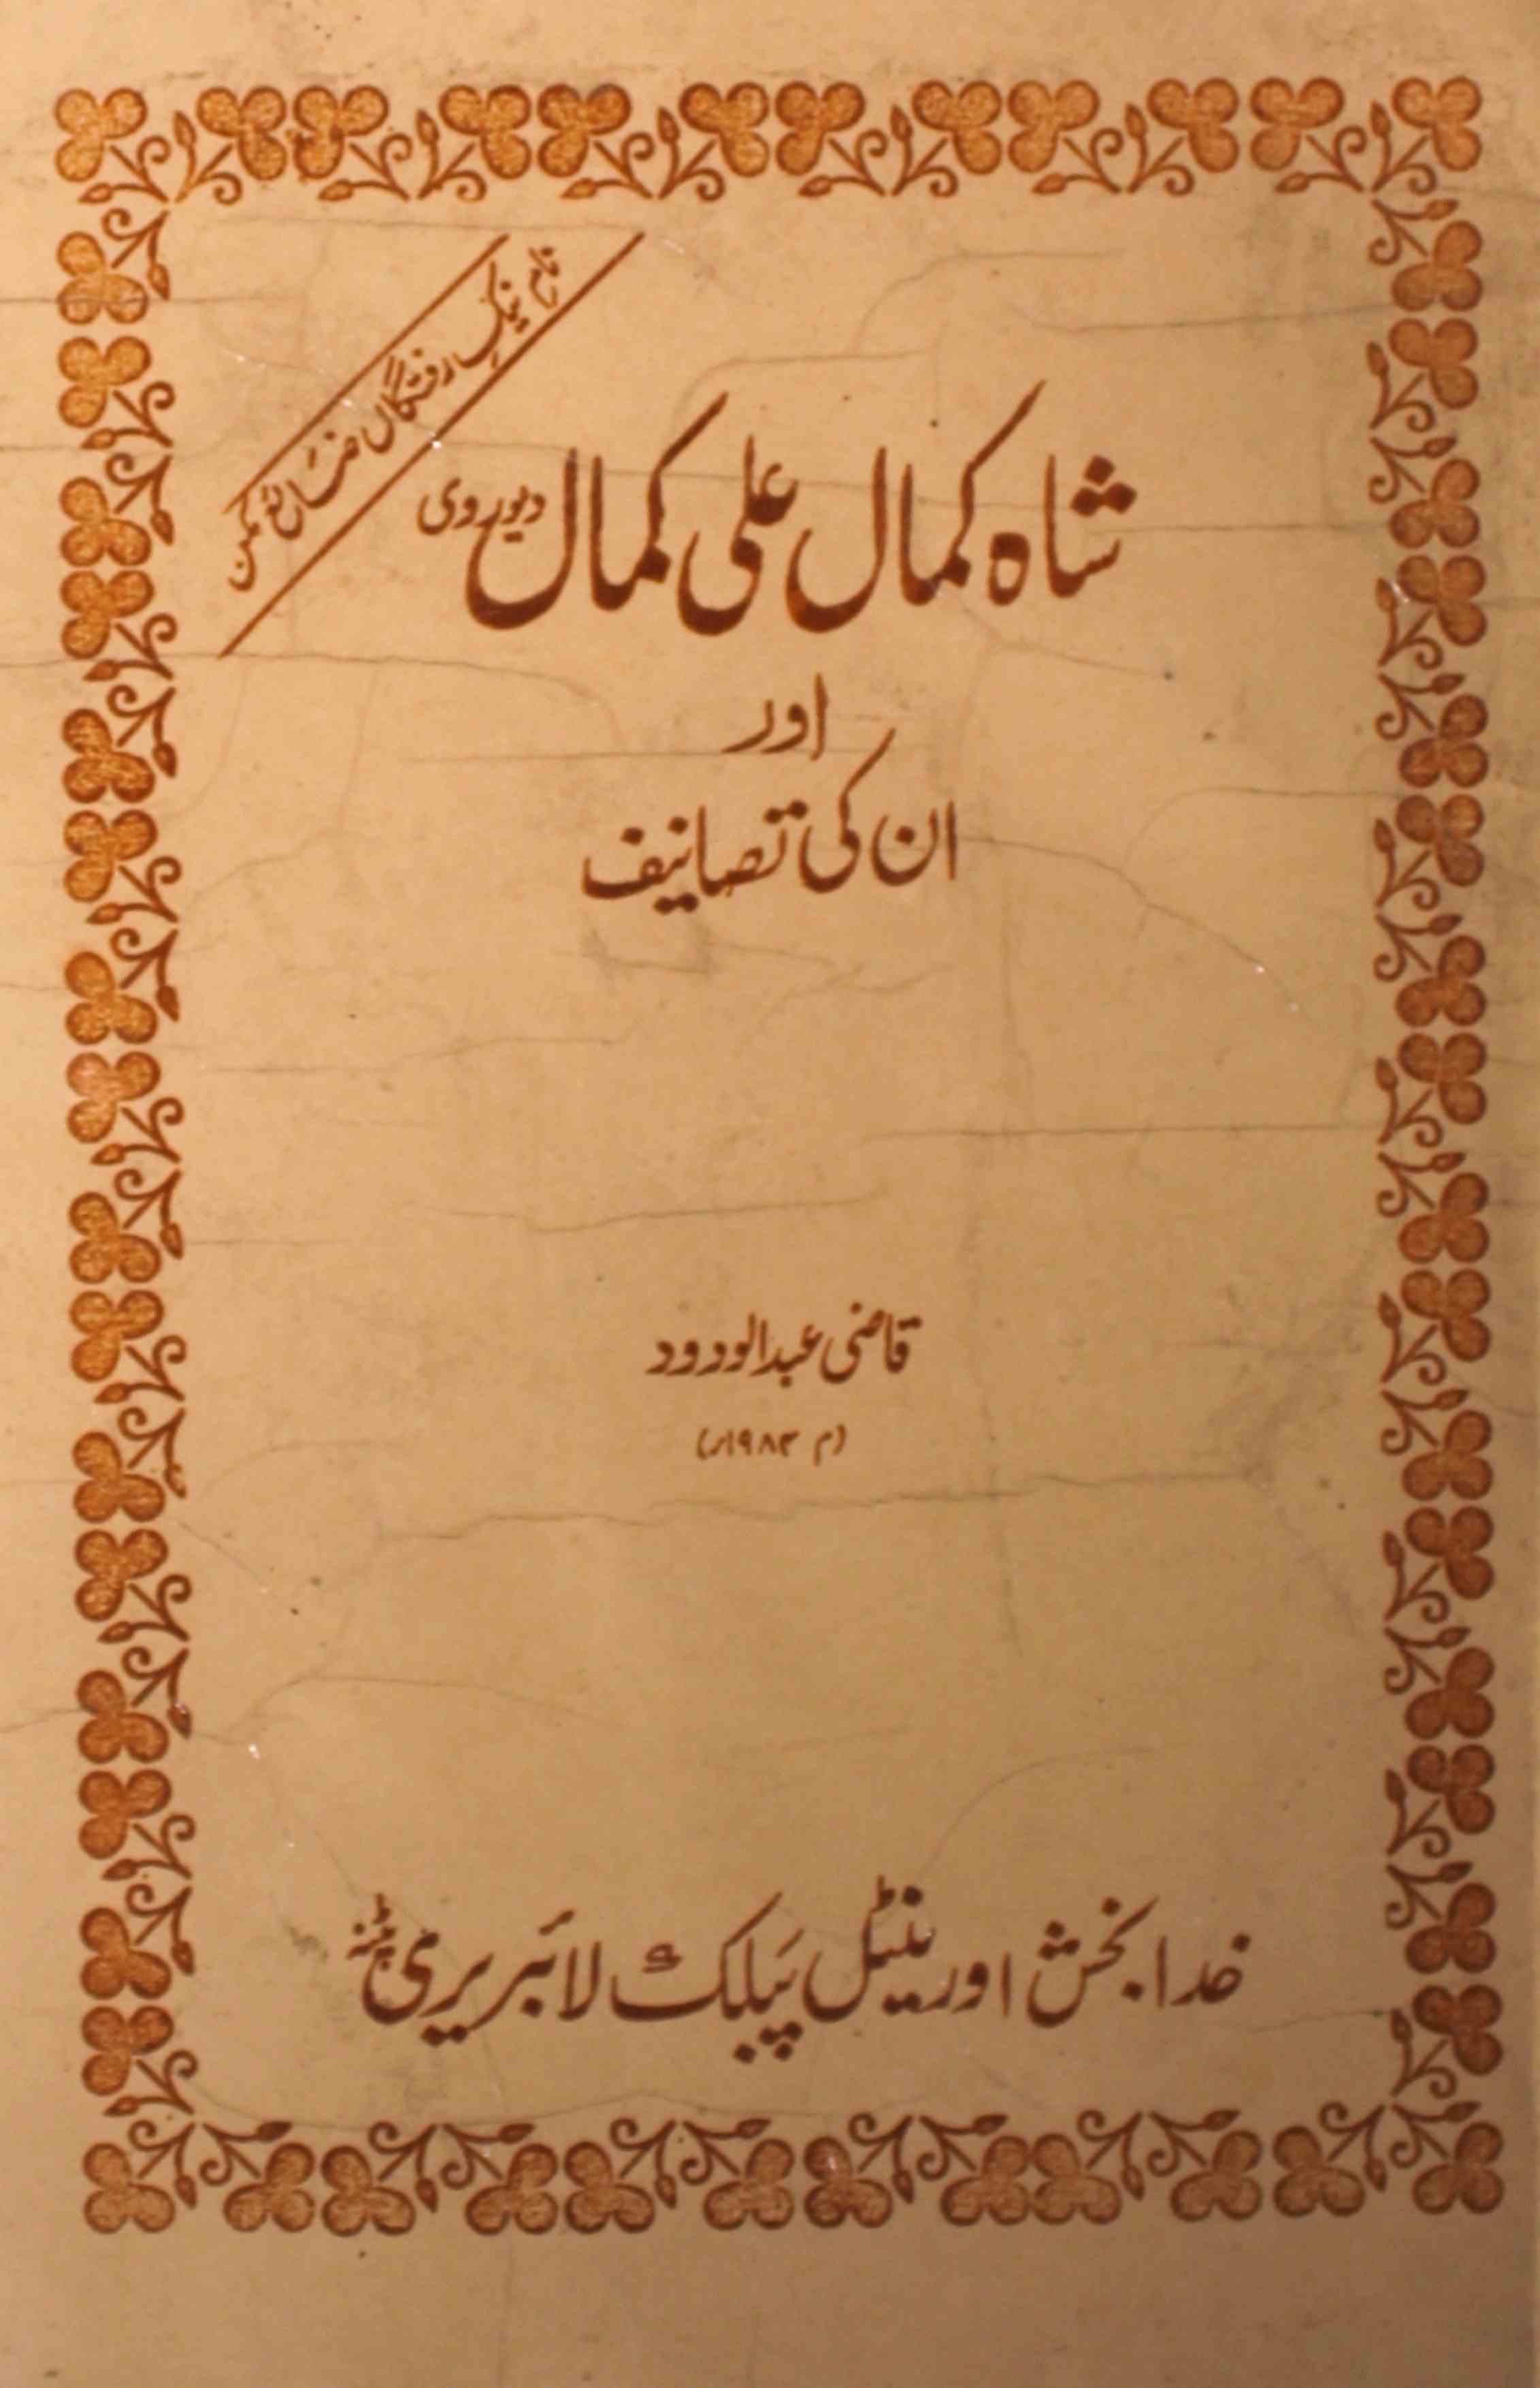 Shah Kamal Ali Kamal Aur Unki Tasaneef